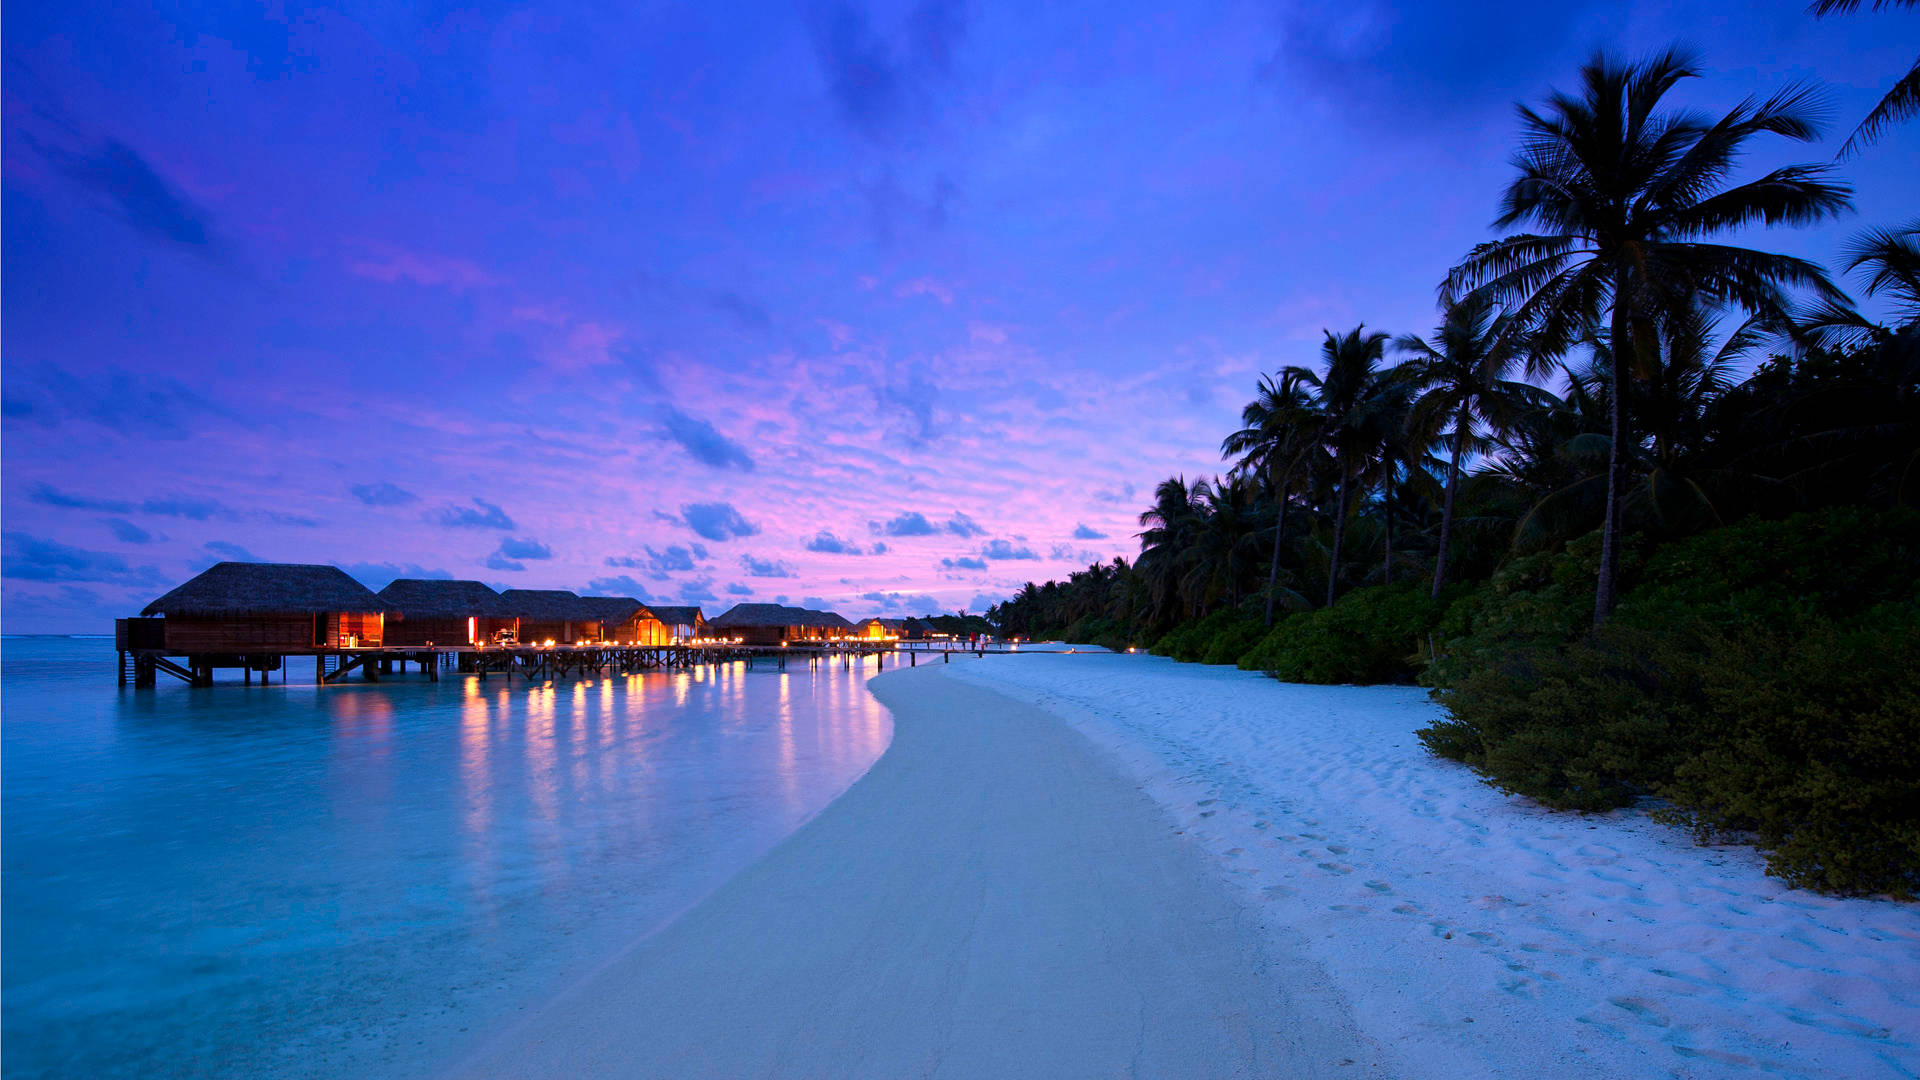 Conrad Maldives Rangali Island Beach Night Picture